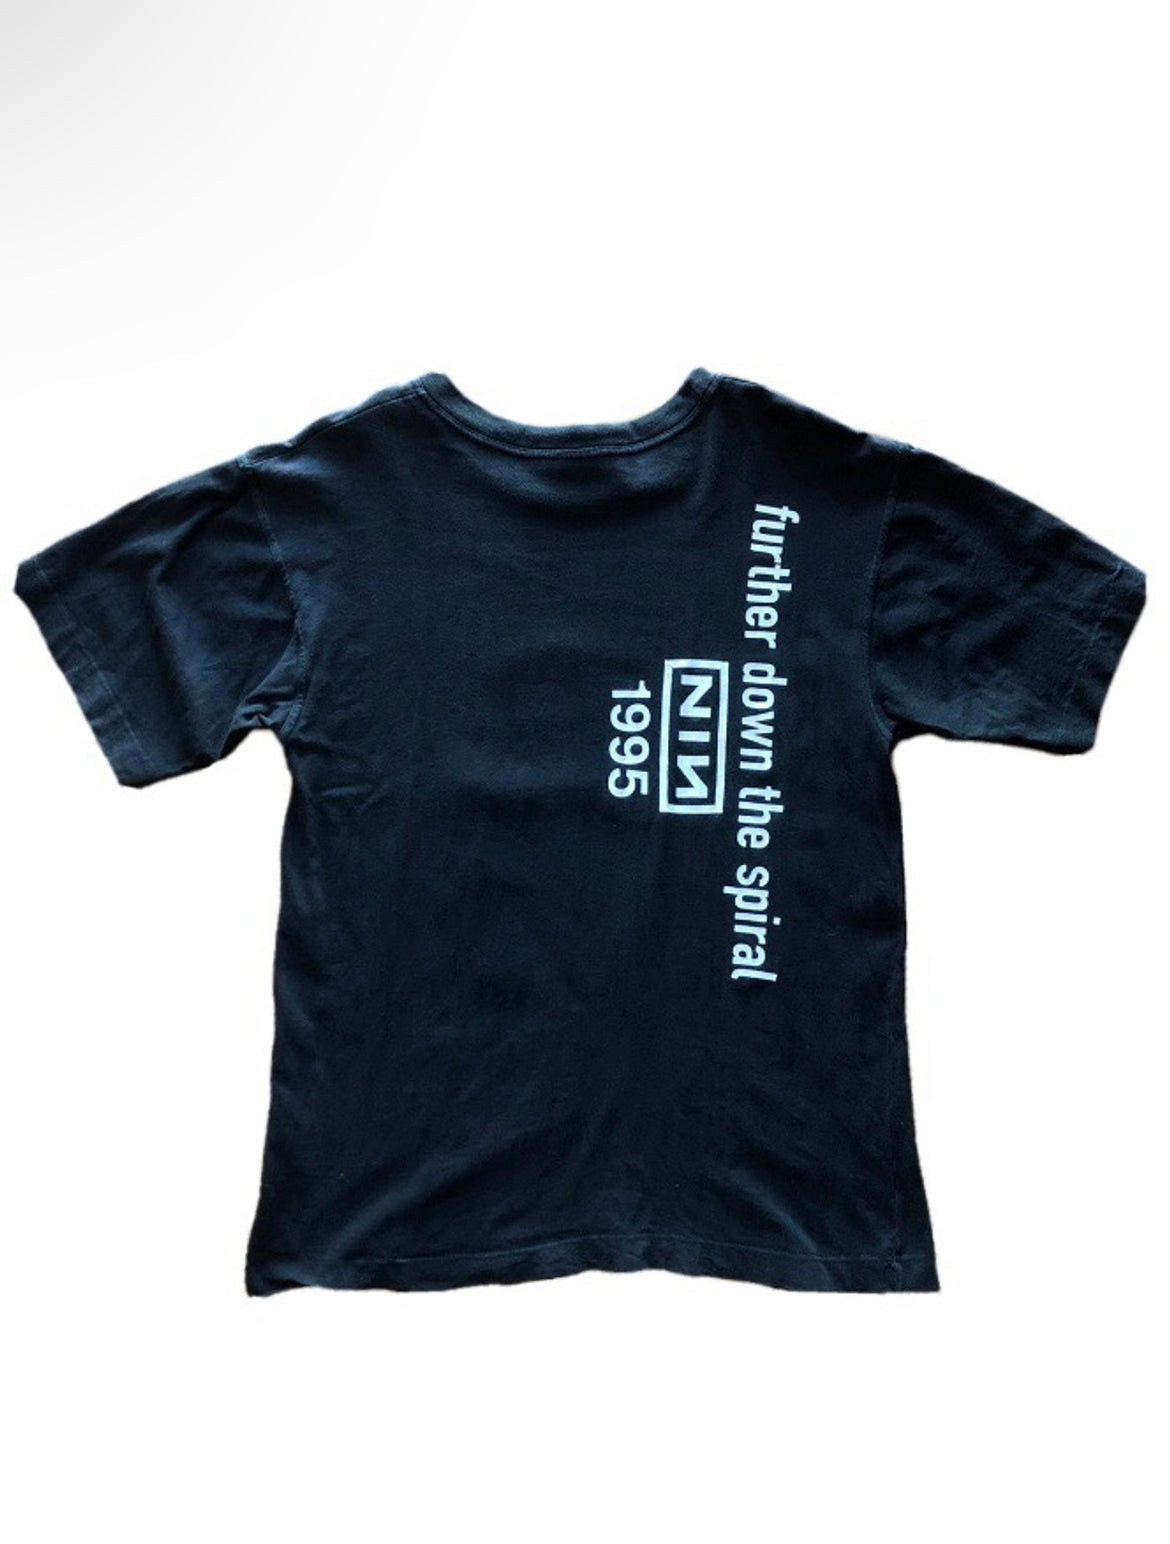 Vintage 1995 Nine Inch Nails Tour T-Shirt - Size M